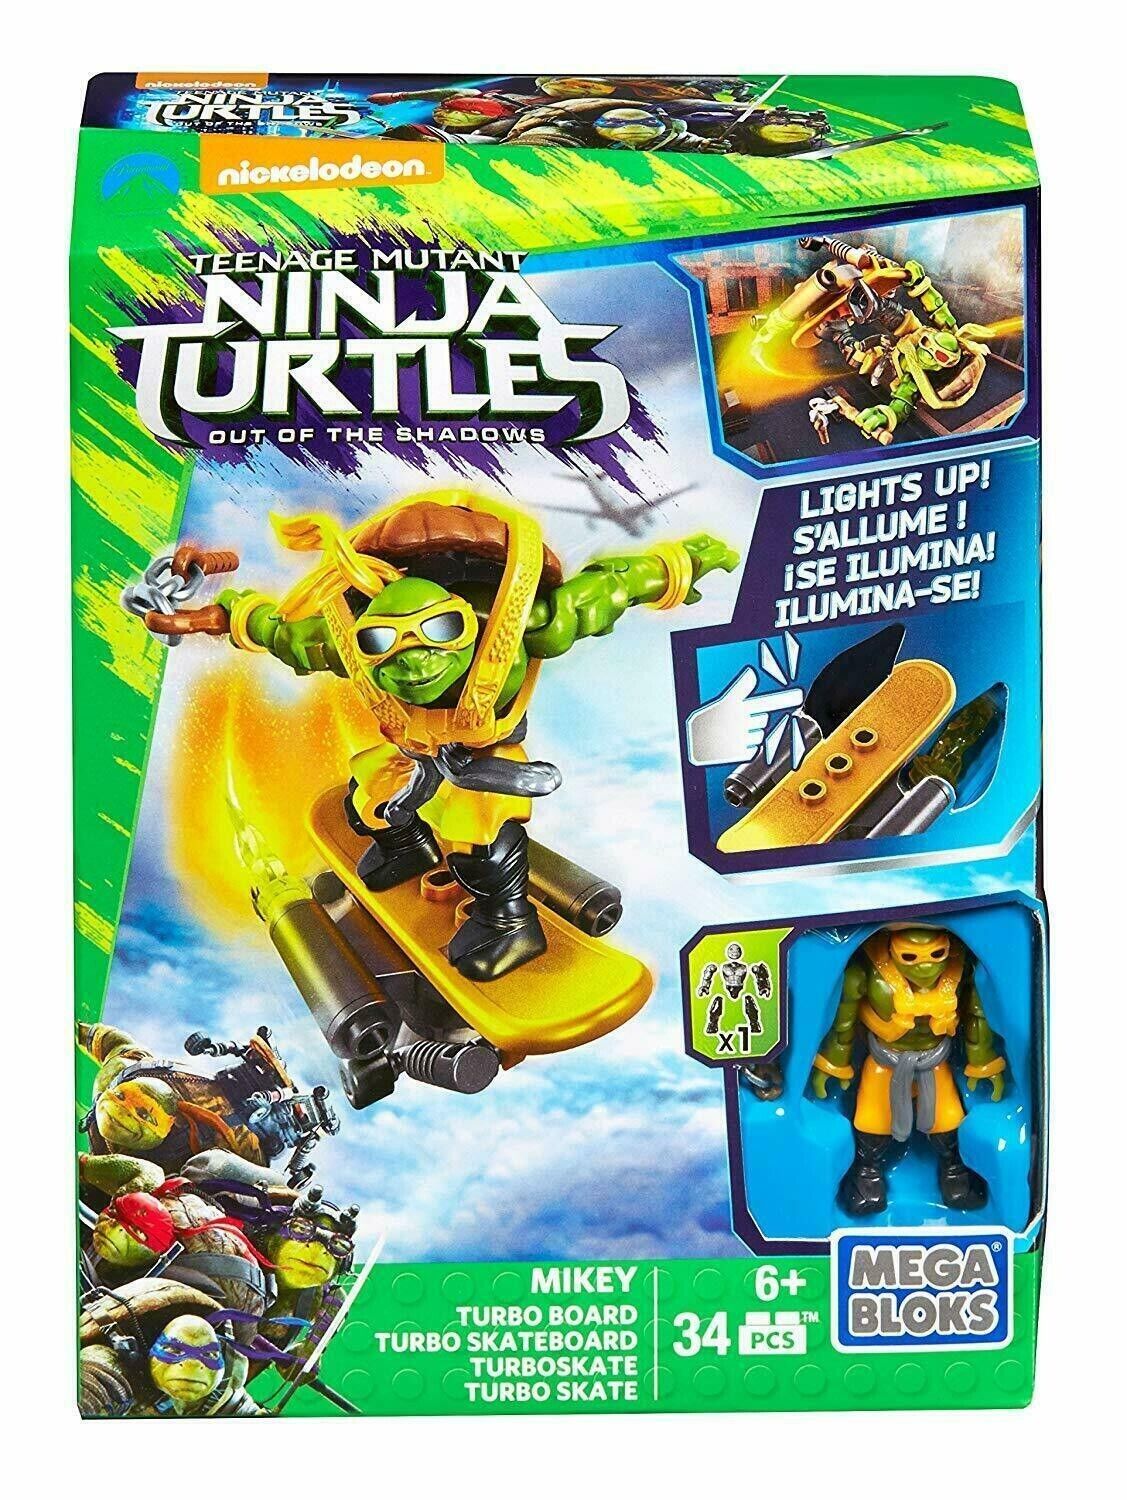 Mega Bloks Teenage Mutant Ninja Turtles Mikey Turbo Board